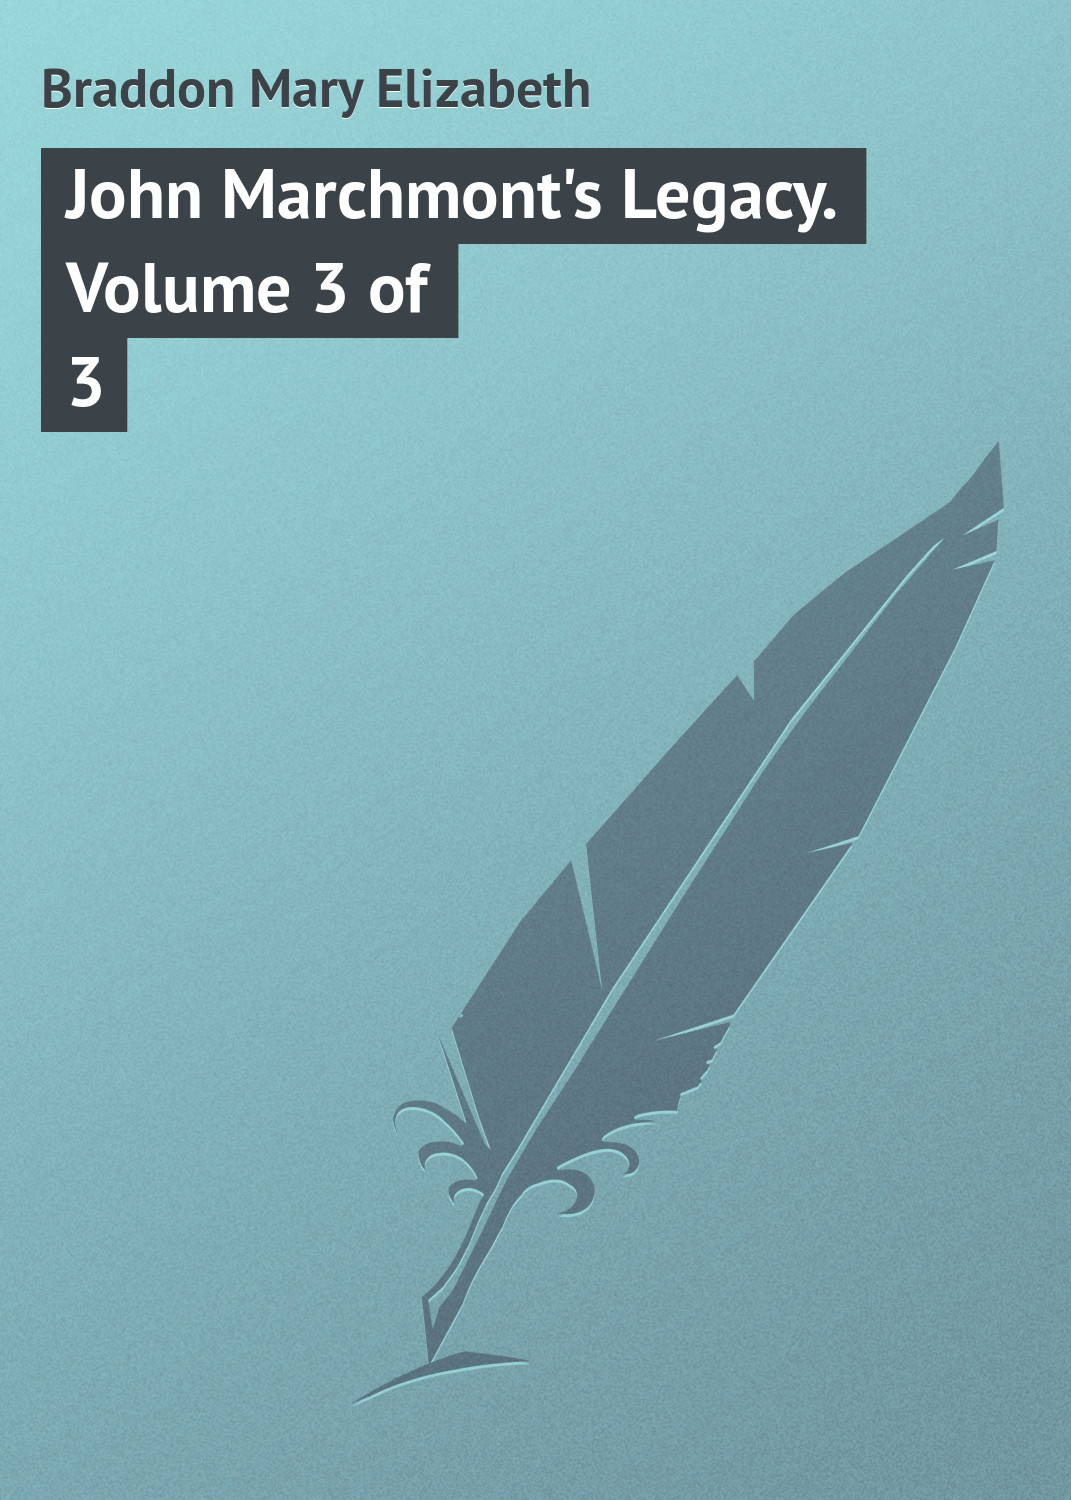 Книга John Marchmont's Legacy. Volume 3 of 3 из серии , созданная Mary Braddon, может относится к жанру Зарубежная классика. Стоимость электронной книги John Marchmont's Legacy. Volume 3 of 3 с идентификатором 23149427 составляет 5.99 руб.